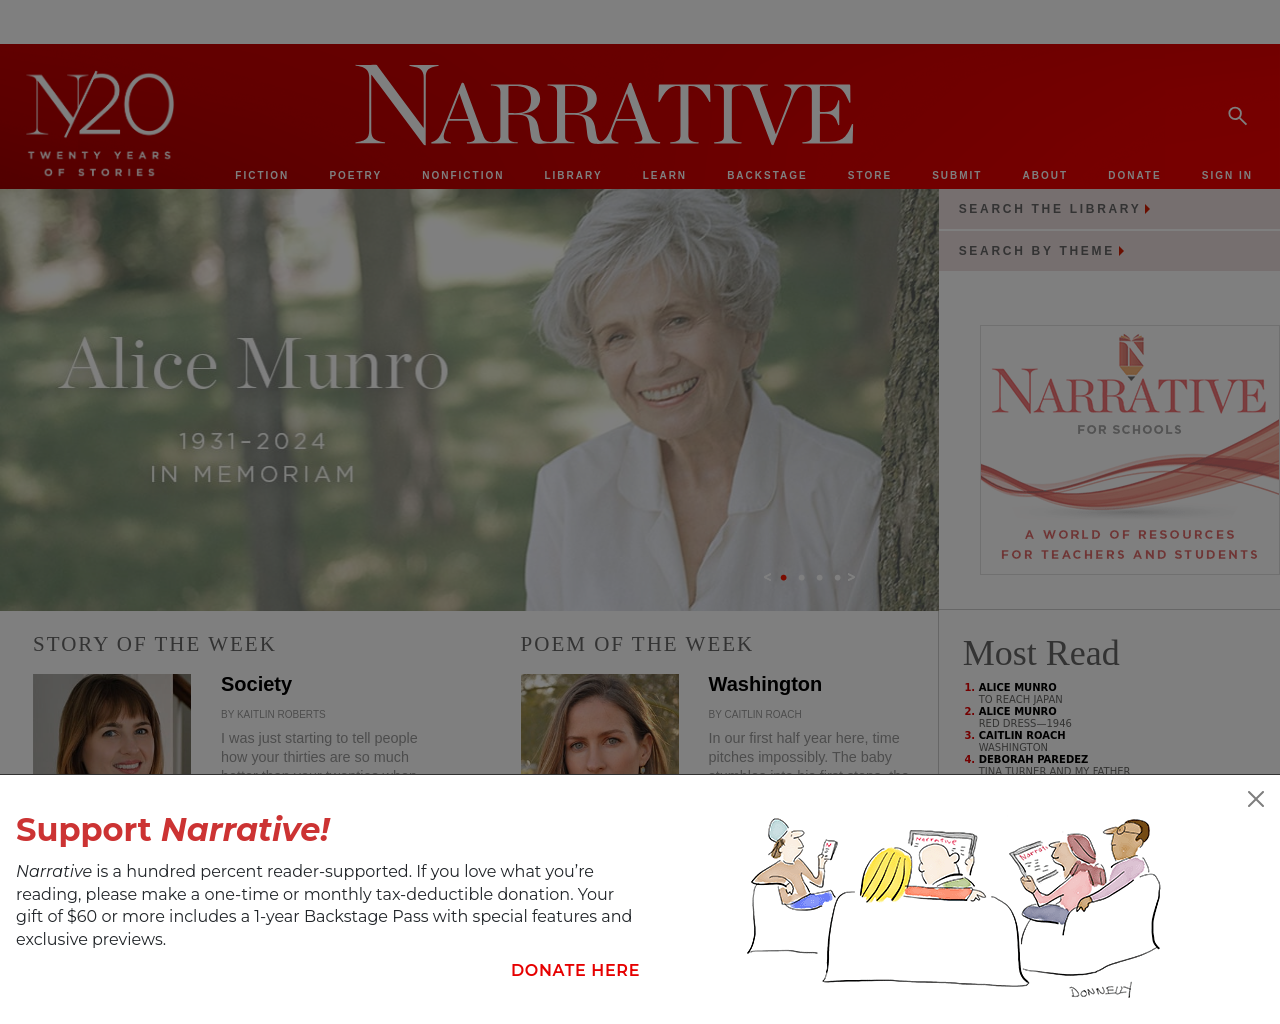 narrativemagazine.com